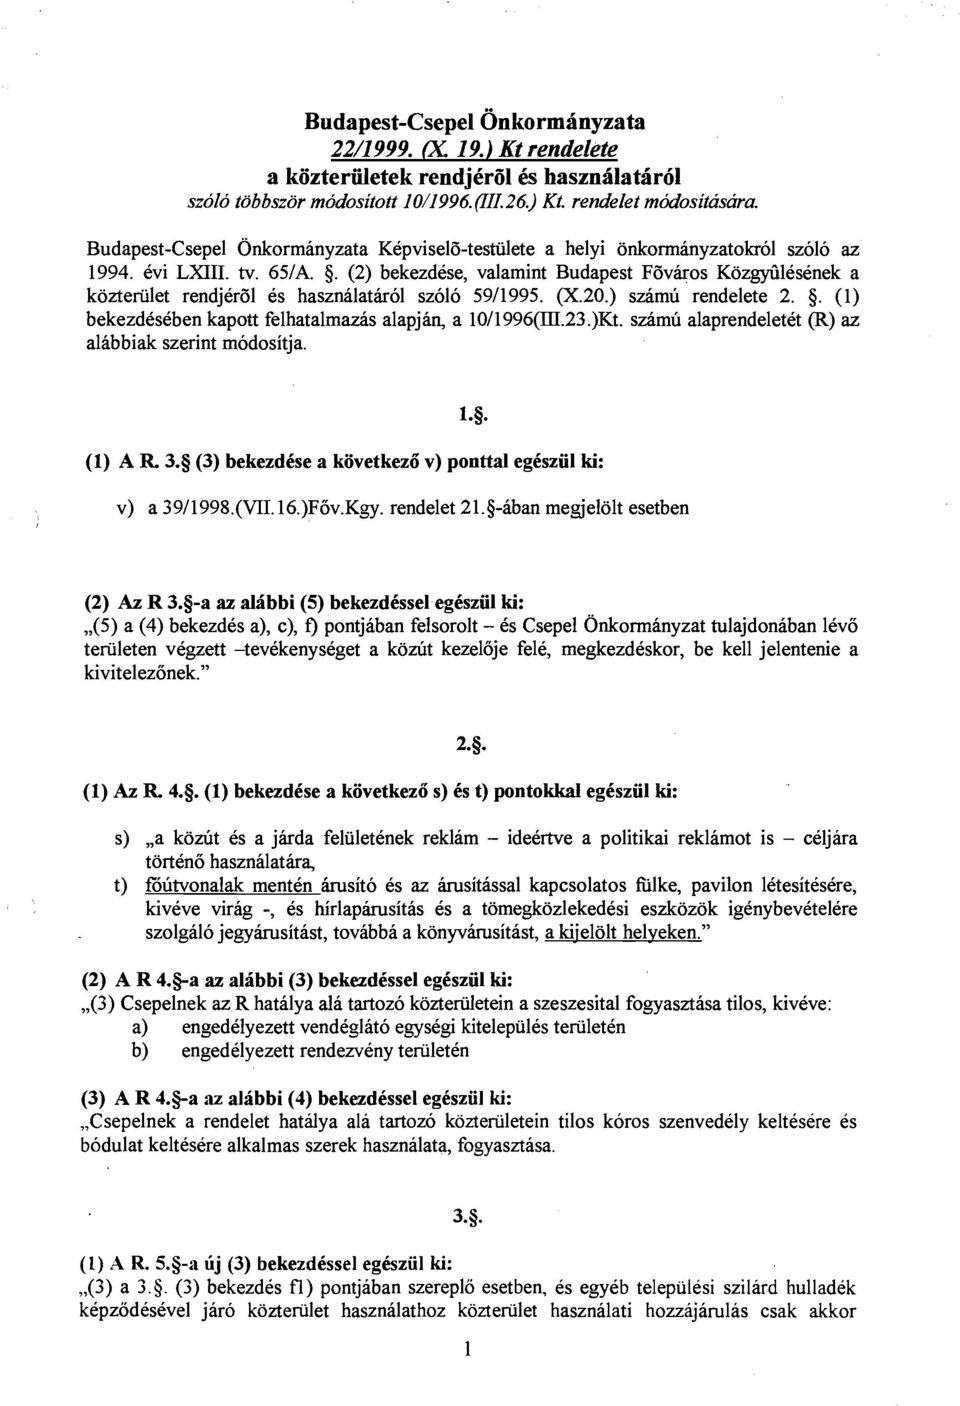 (2) bekezdke, valamint Budapest F6vkos KozMlesenek a kozteriilet rendjer6l es hasznalatkol szolo 5911995. (X.20.) szamu rendelete 2. 5. (1) bekezdeseben kapott felhatalrnazas alapjan, a 10/1996(III.